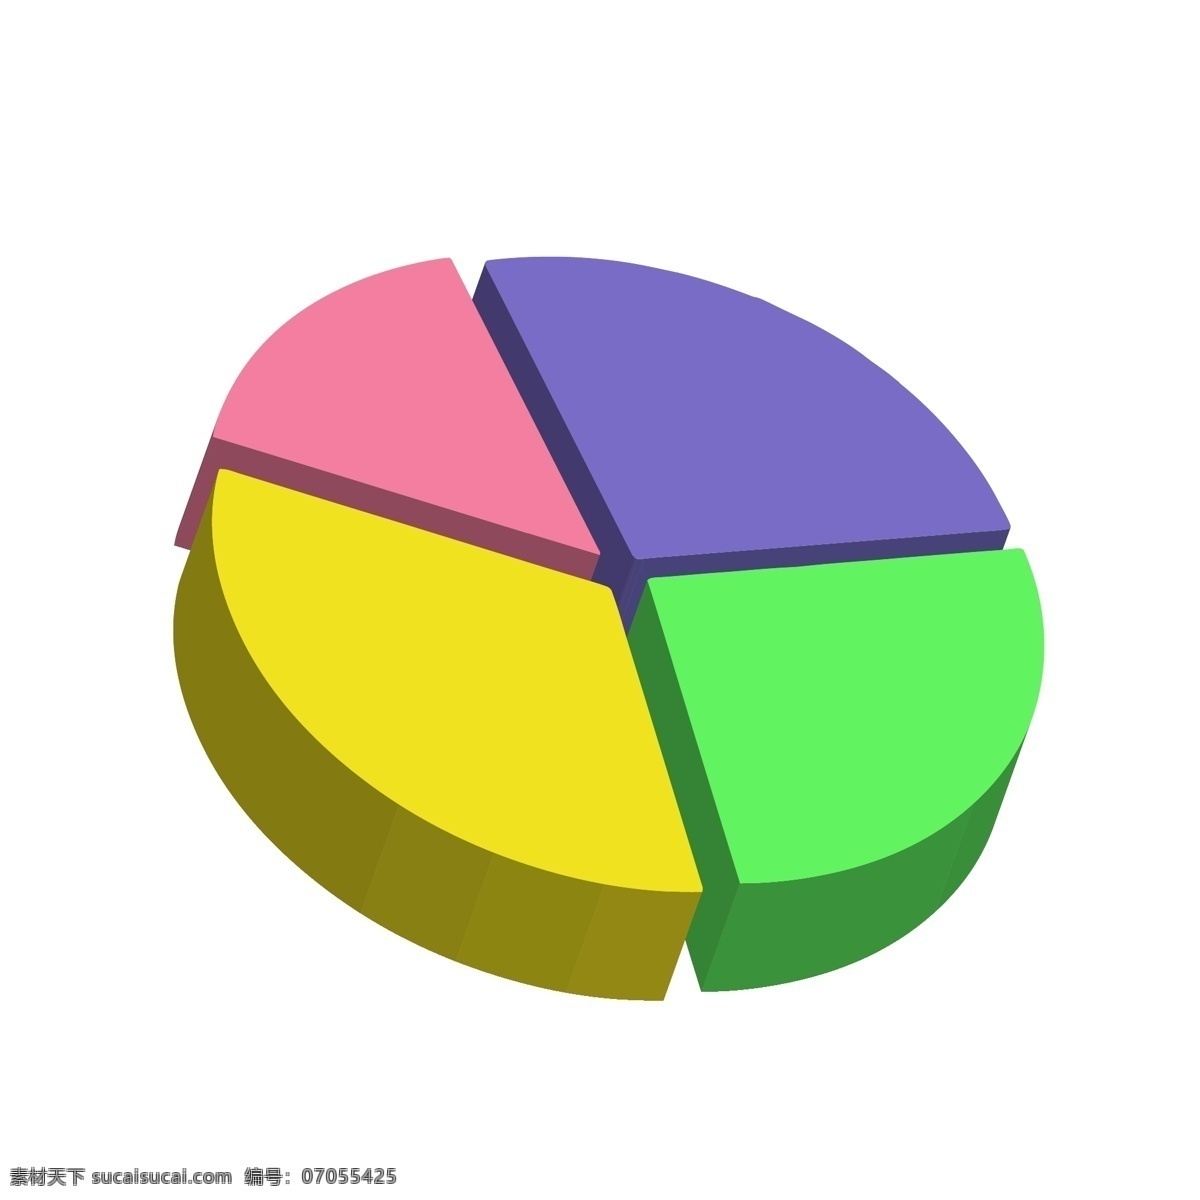 商务 矢量 数据 立体 饼 图 饼图 数据分析 ppt图表 彩色信息图表 商务图表 饼图ppt 柱图 环形图表 科技